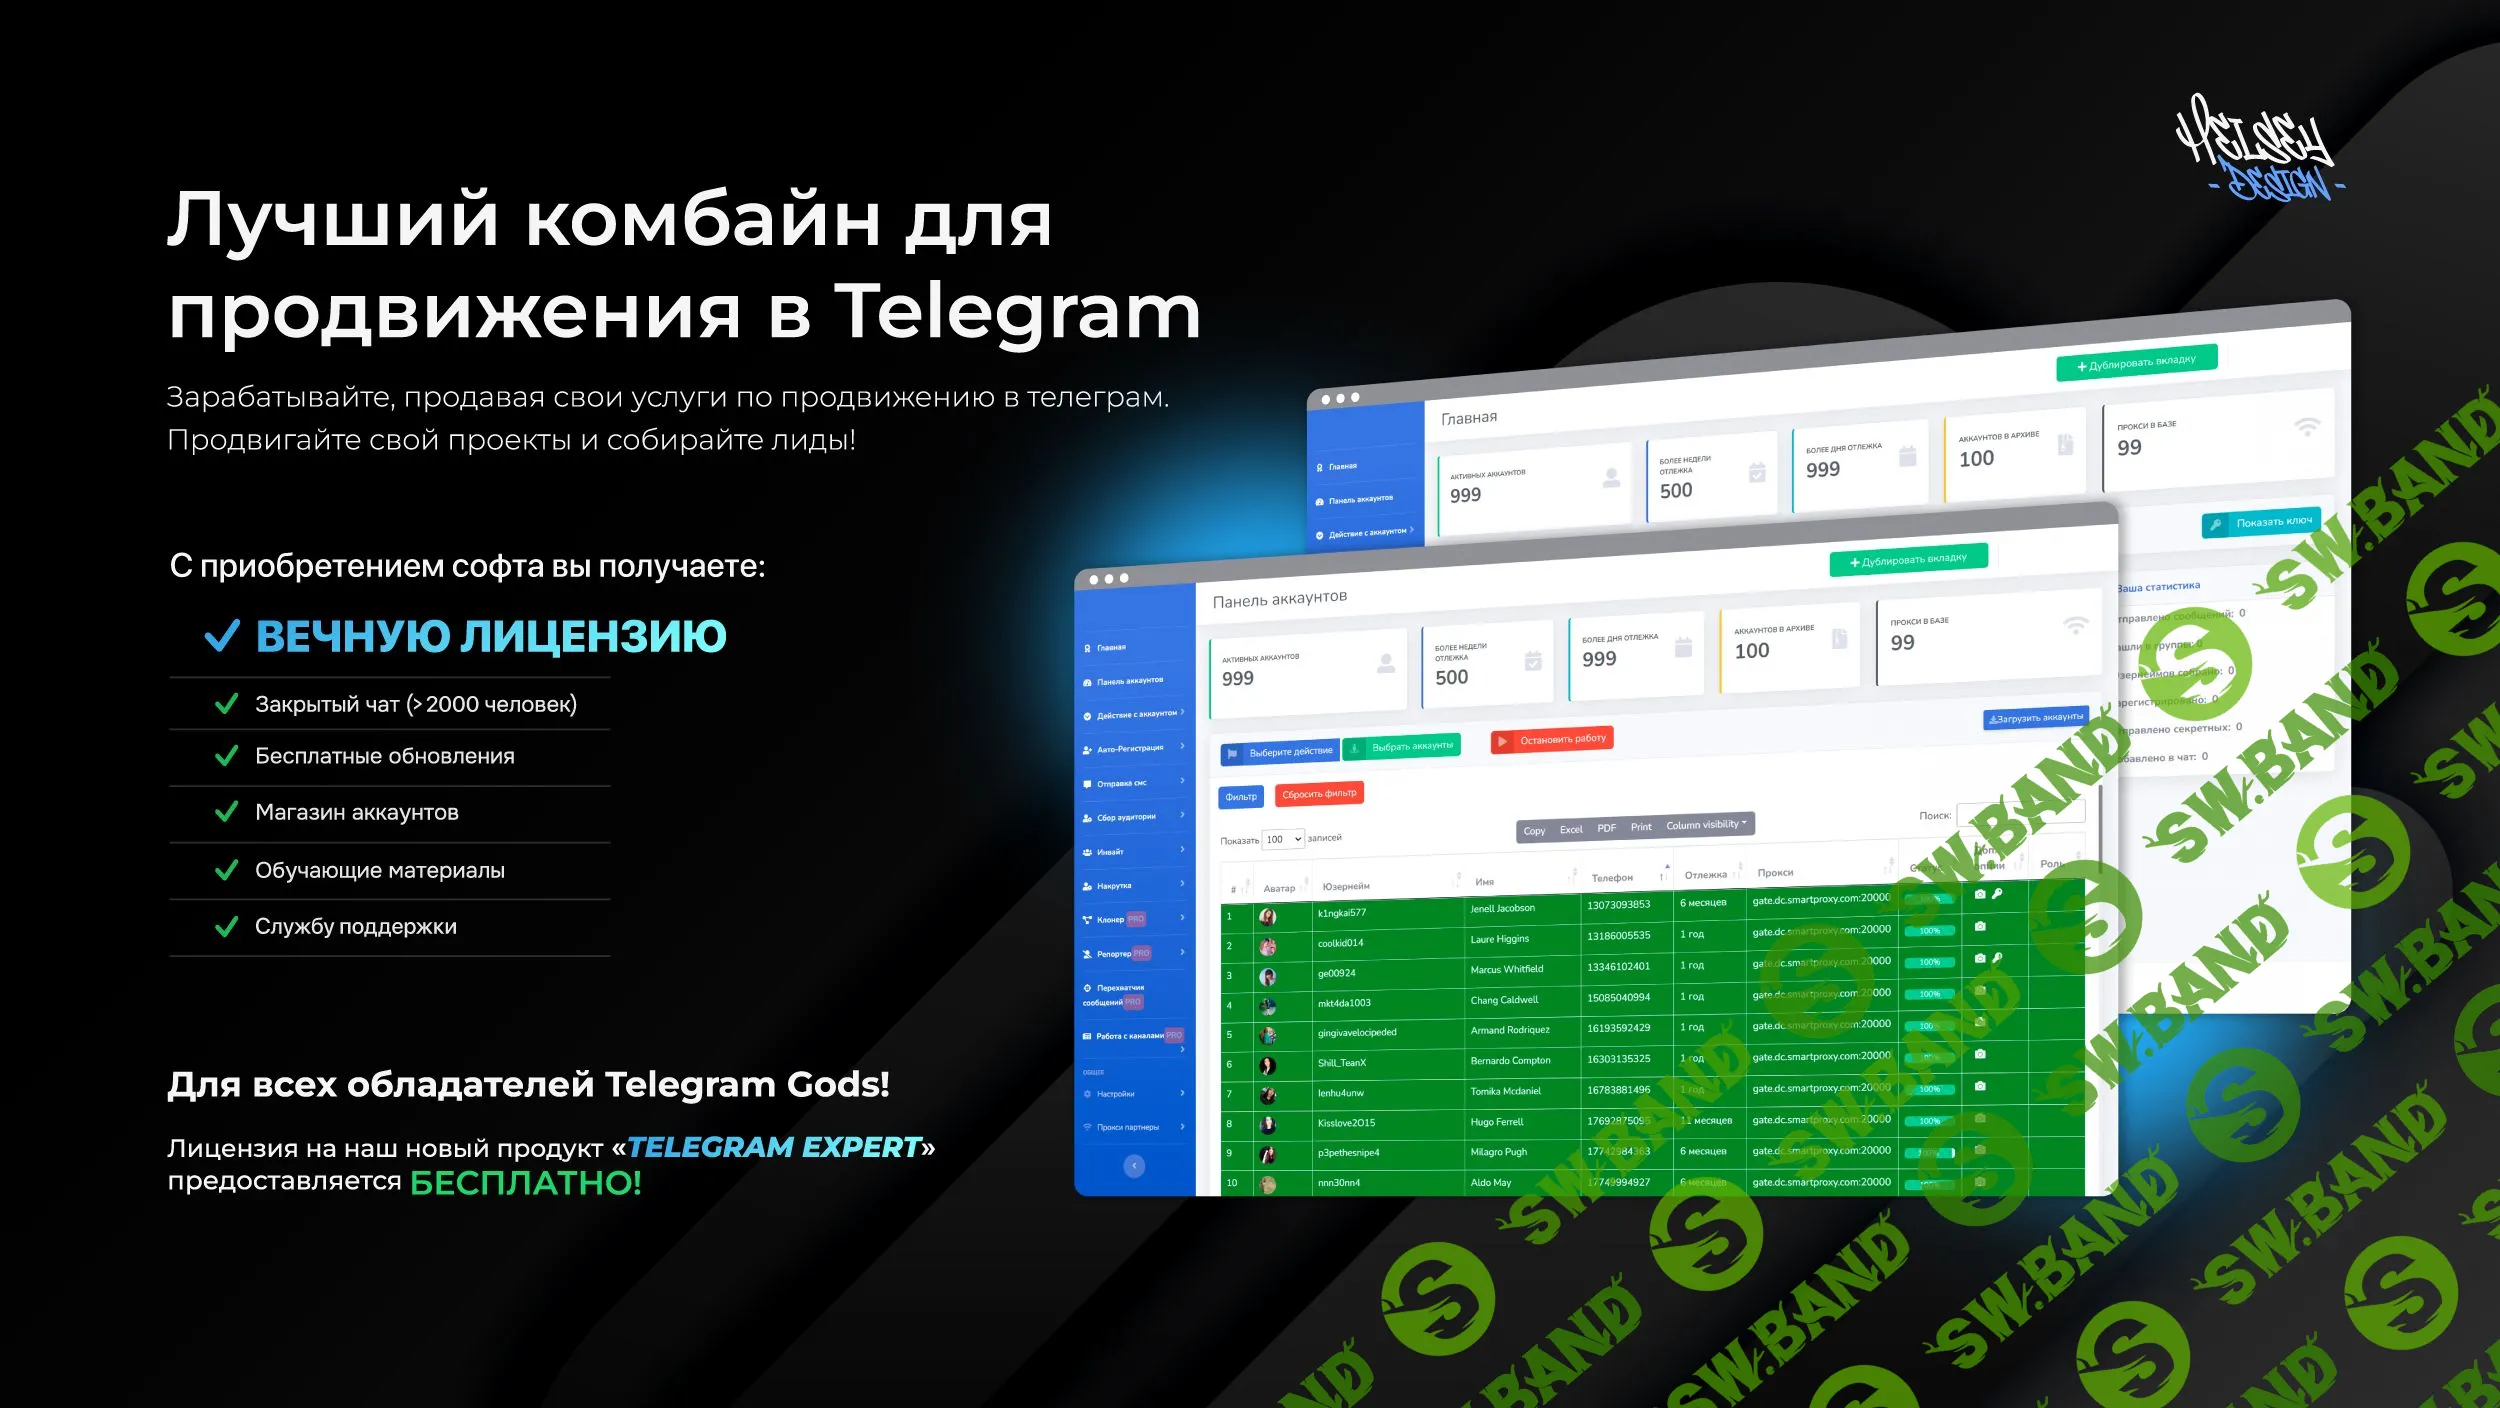 TELEGRAM SOFT Gods\Expert - Многоцелевой комбайн по работе с телеграмм